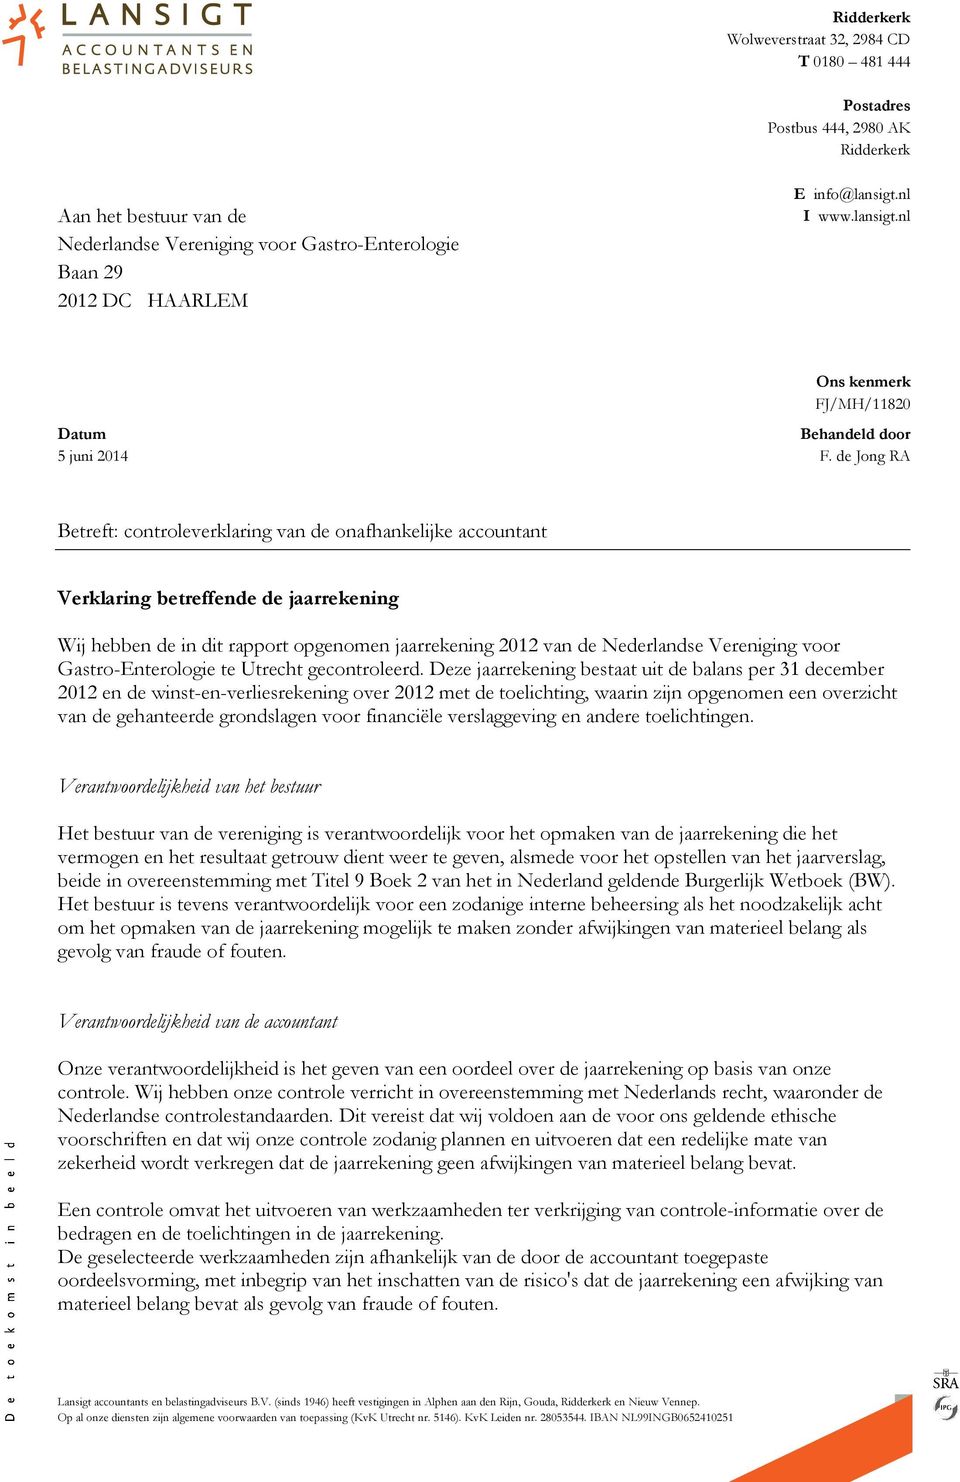 de Jong RA Betreft: controleverklaring van de onafhankelijke accountant Verklaring betreffende de jaarrekening Wij hebben de in dit rapport opgenomen jaarrekening 2012 van de Nederlandse Vereniging